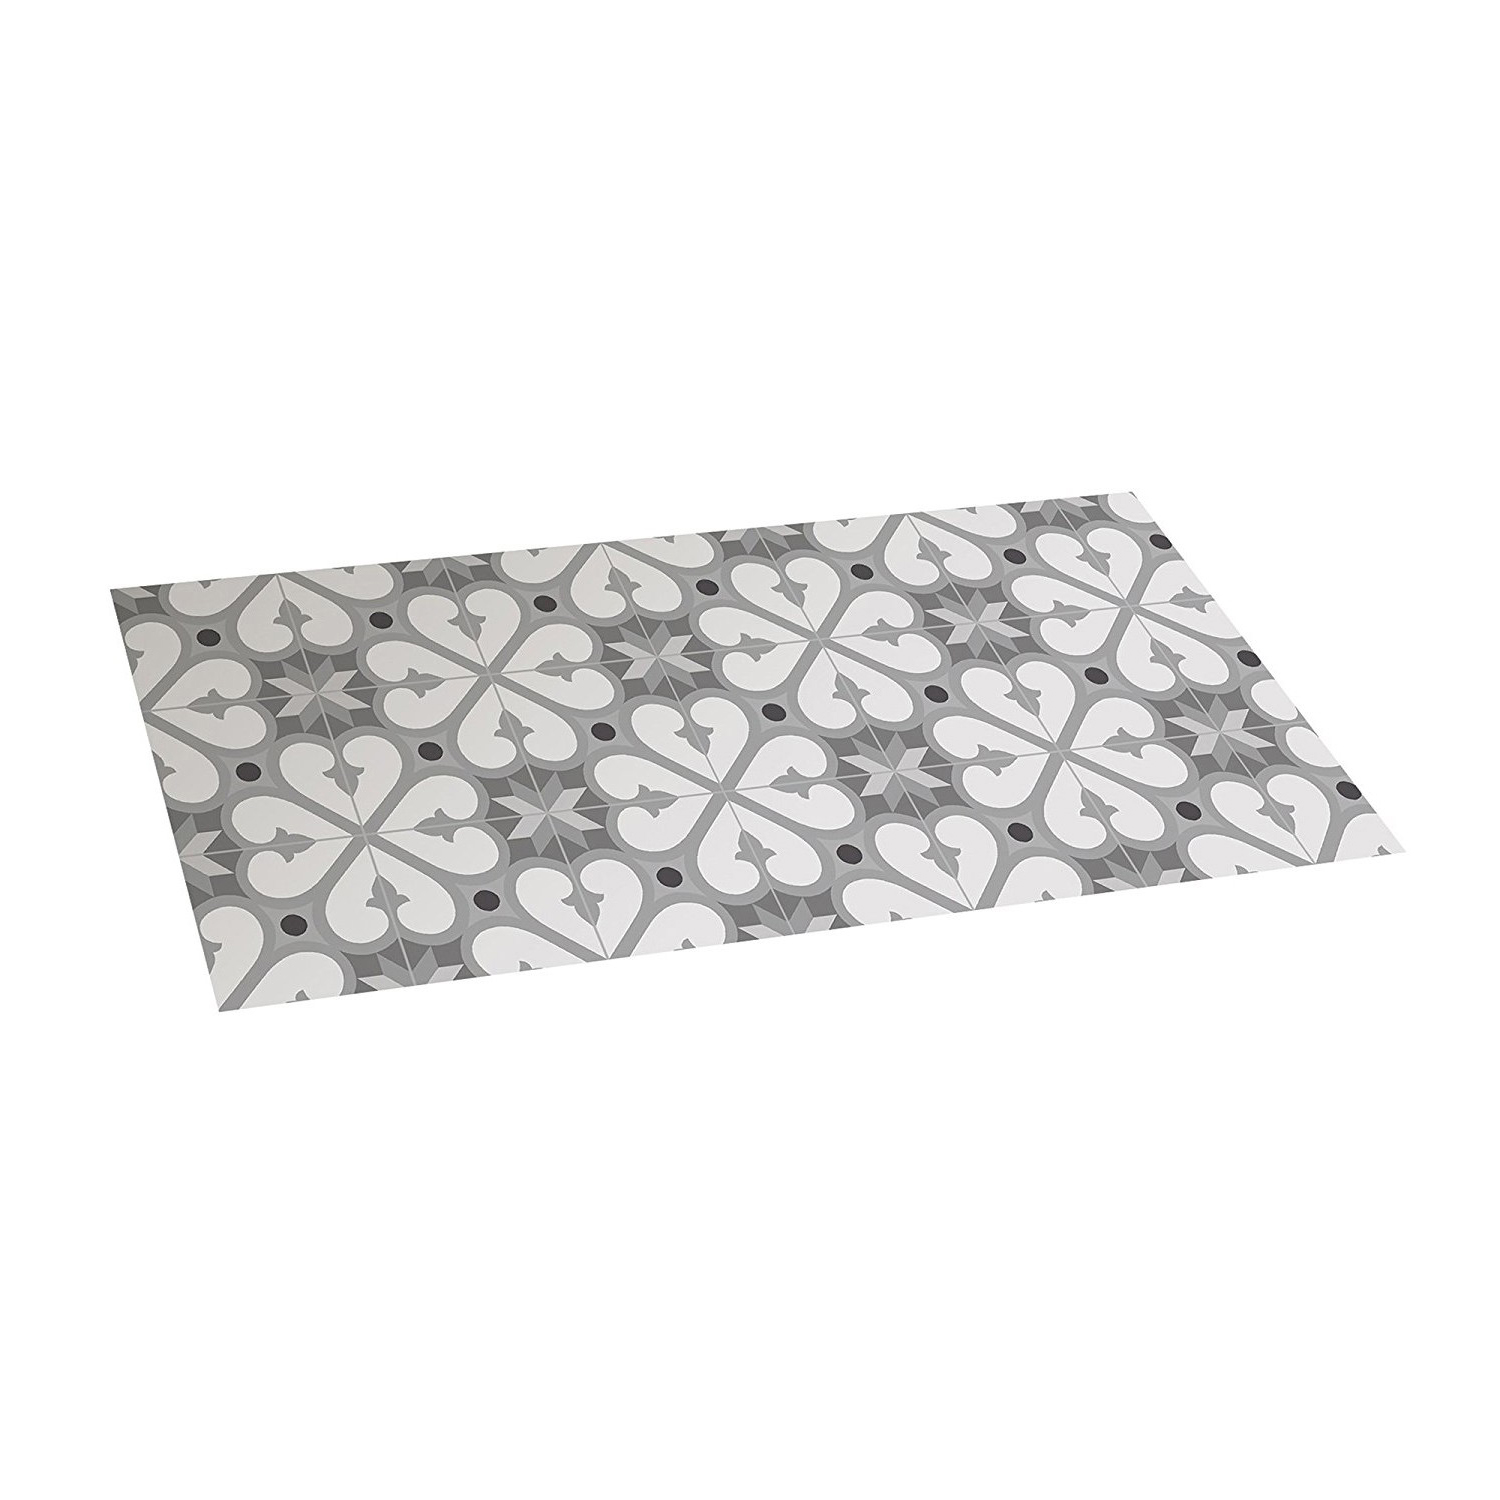 Tappeto vinilico 50 x 110 cm con fondo antiscivolo croma bcn grigio pvc